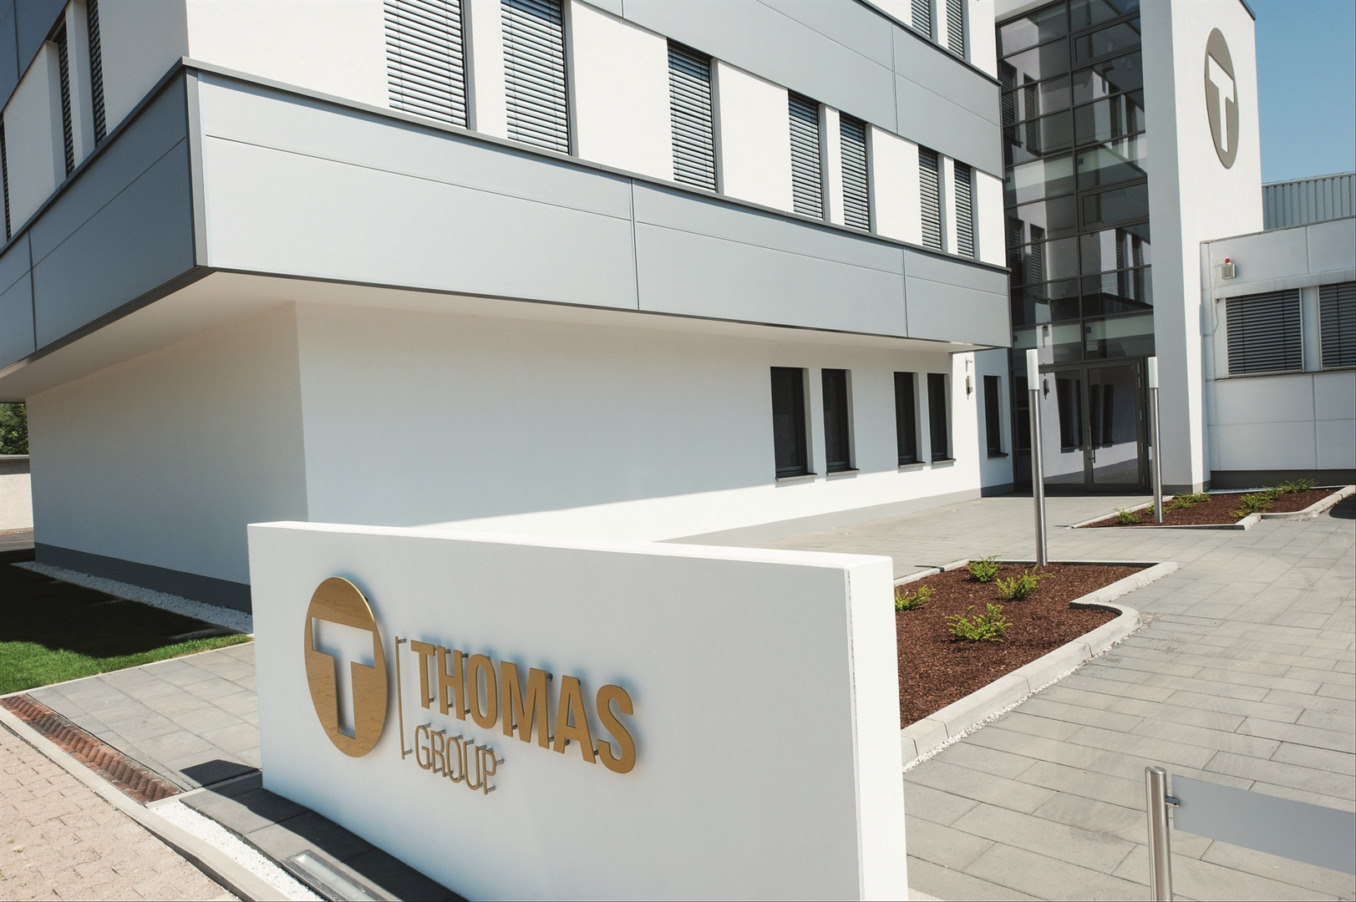 Freie Stelle Thomas GmbH